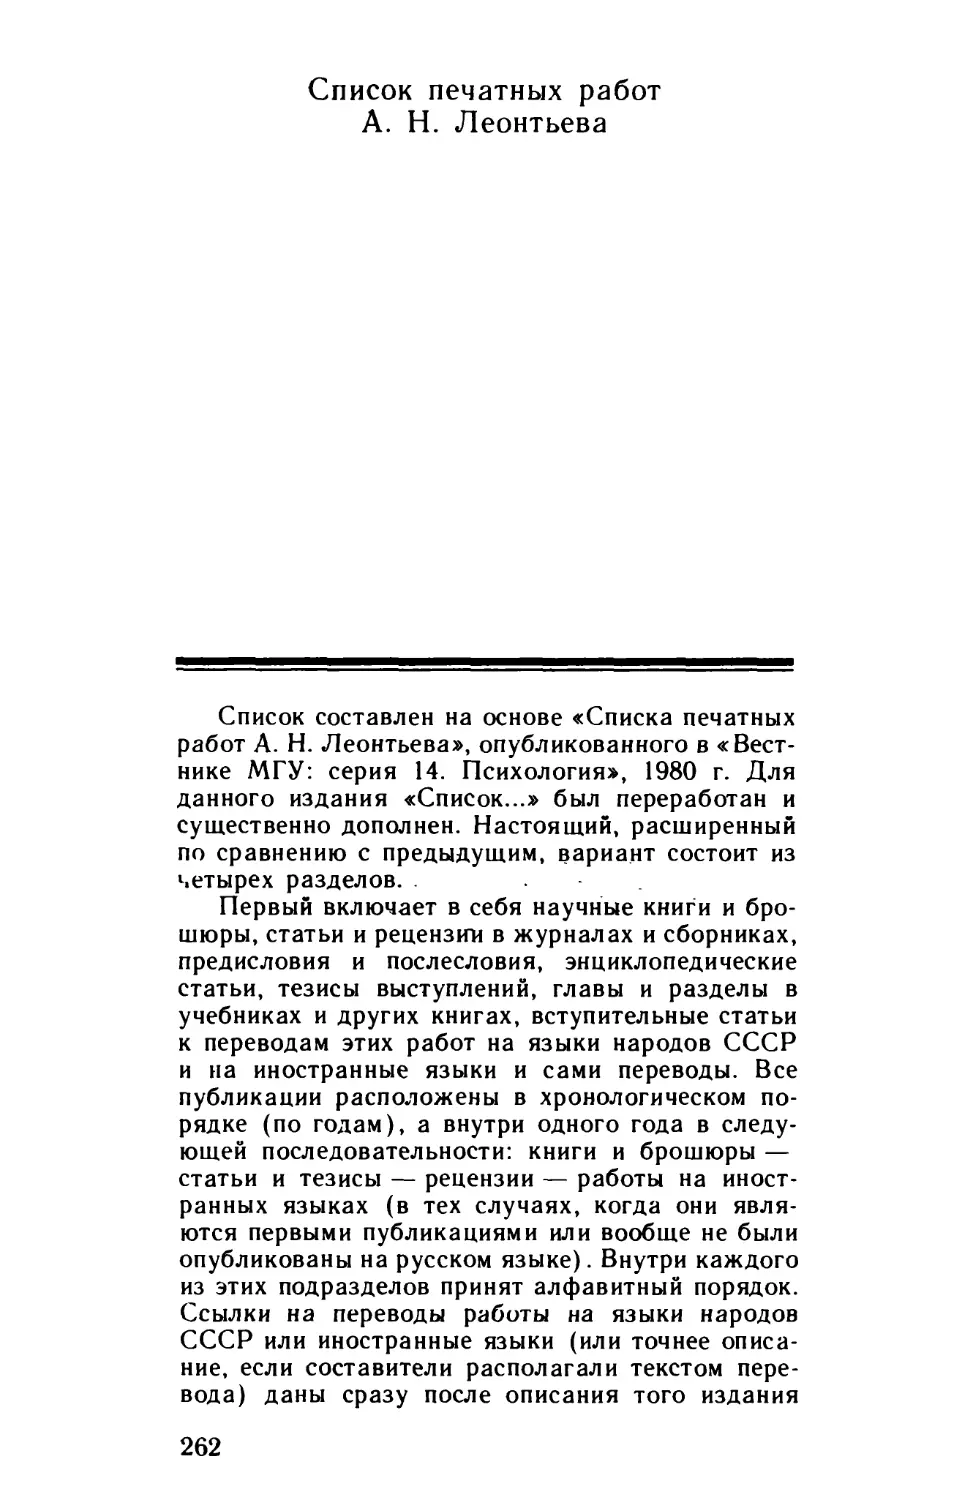 Список печатных работ А. Н. Леонтьева